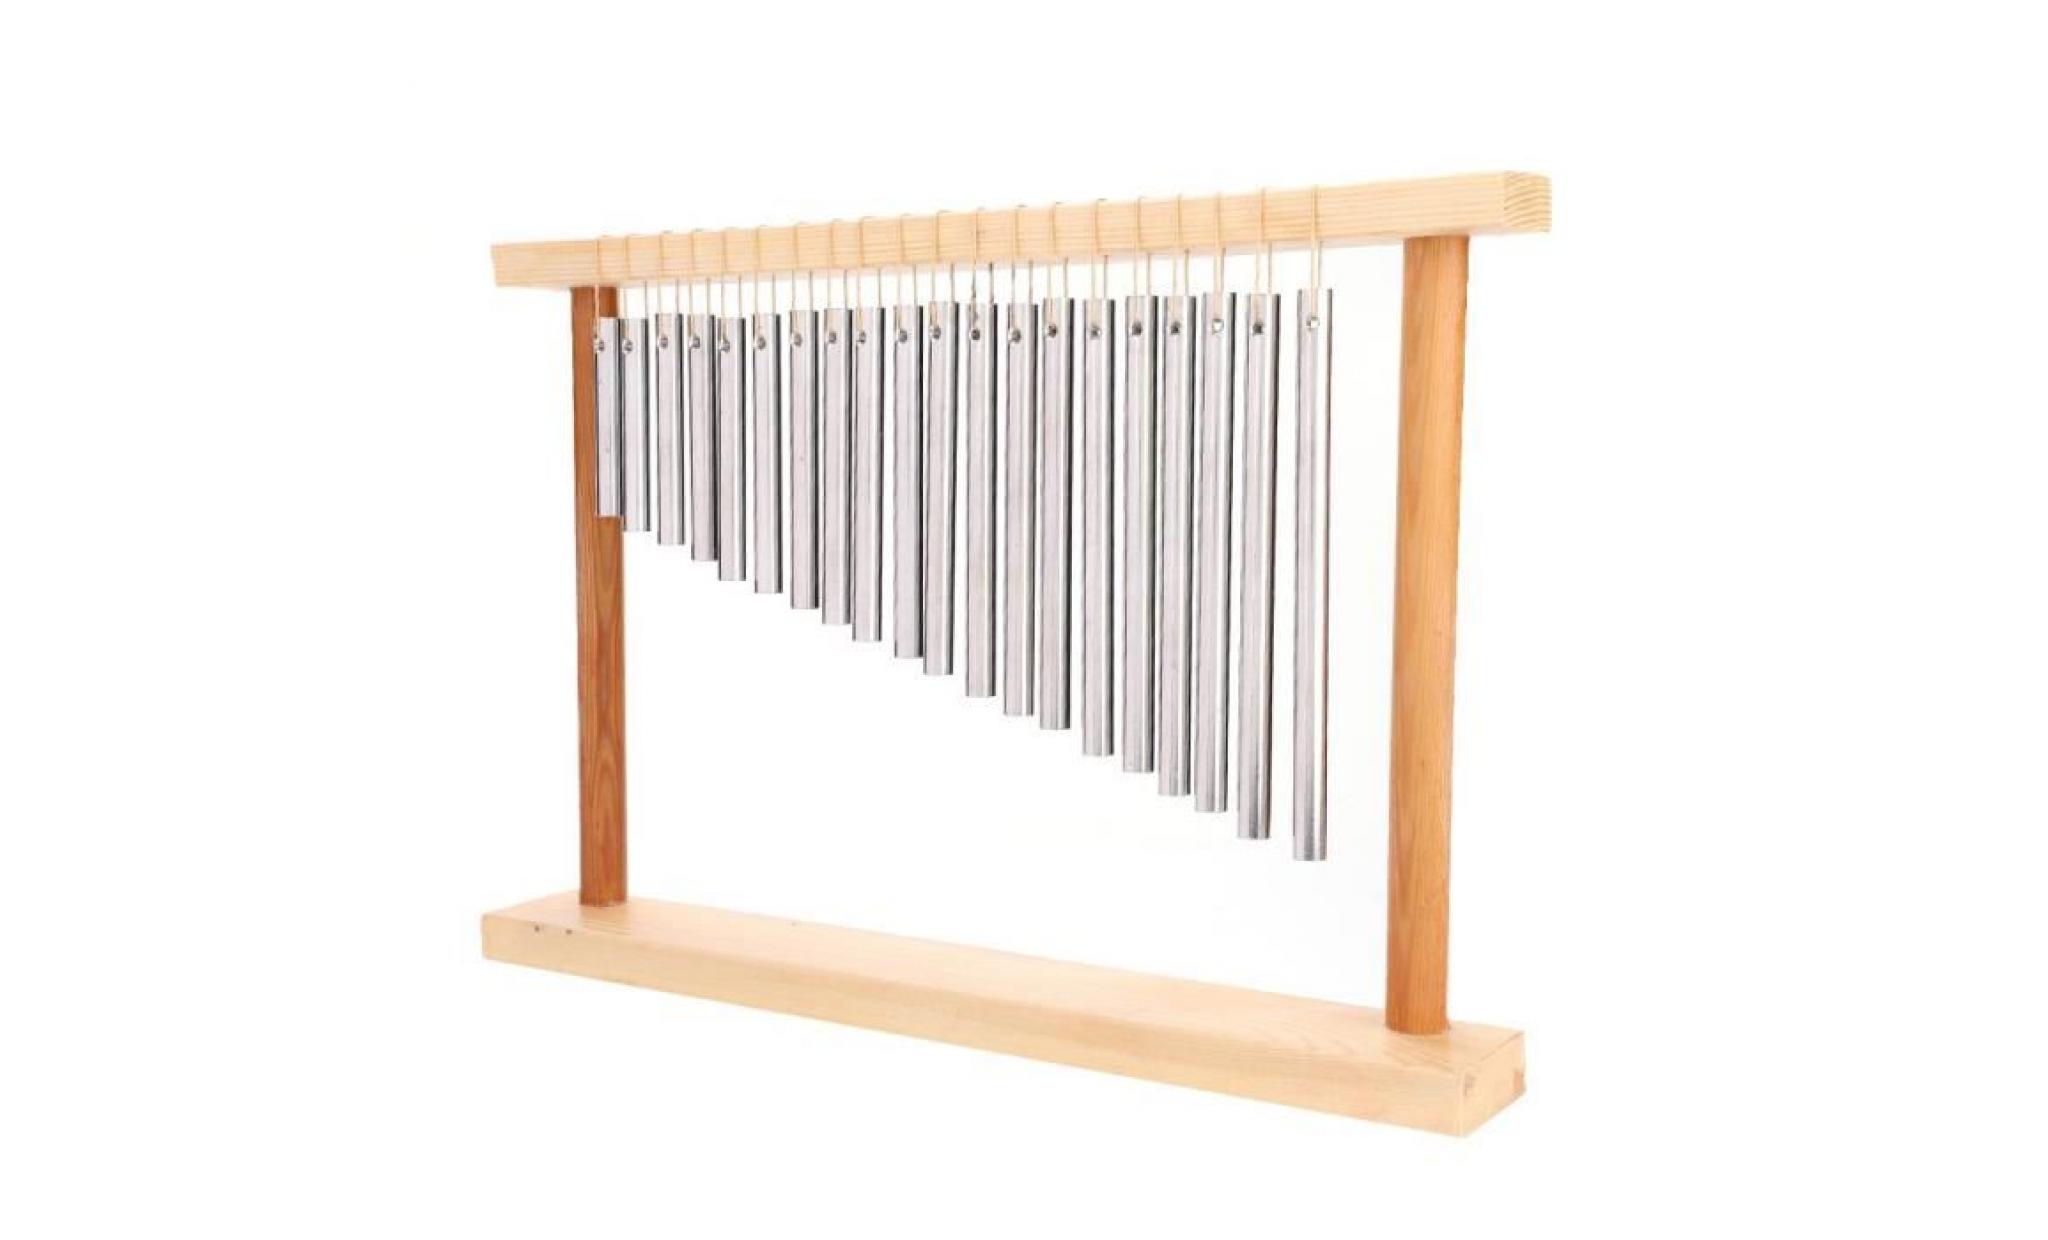 20 barres instrument de percussion musicale  carillon de vent avec 20 tuyau en aluminium solide carillons à percussion(argent)   gar pas cher